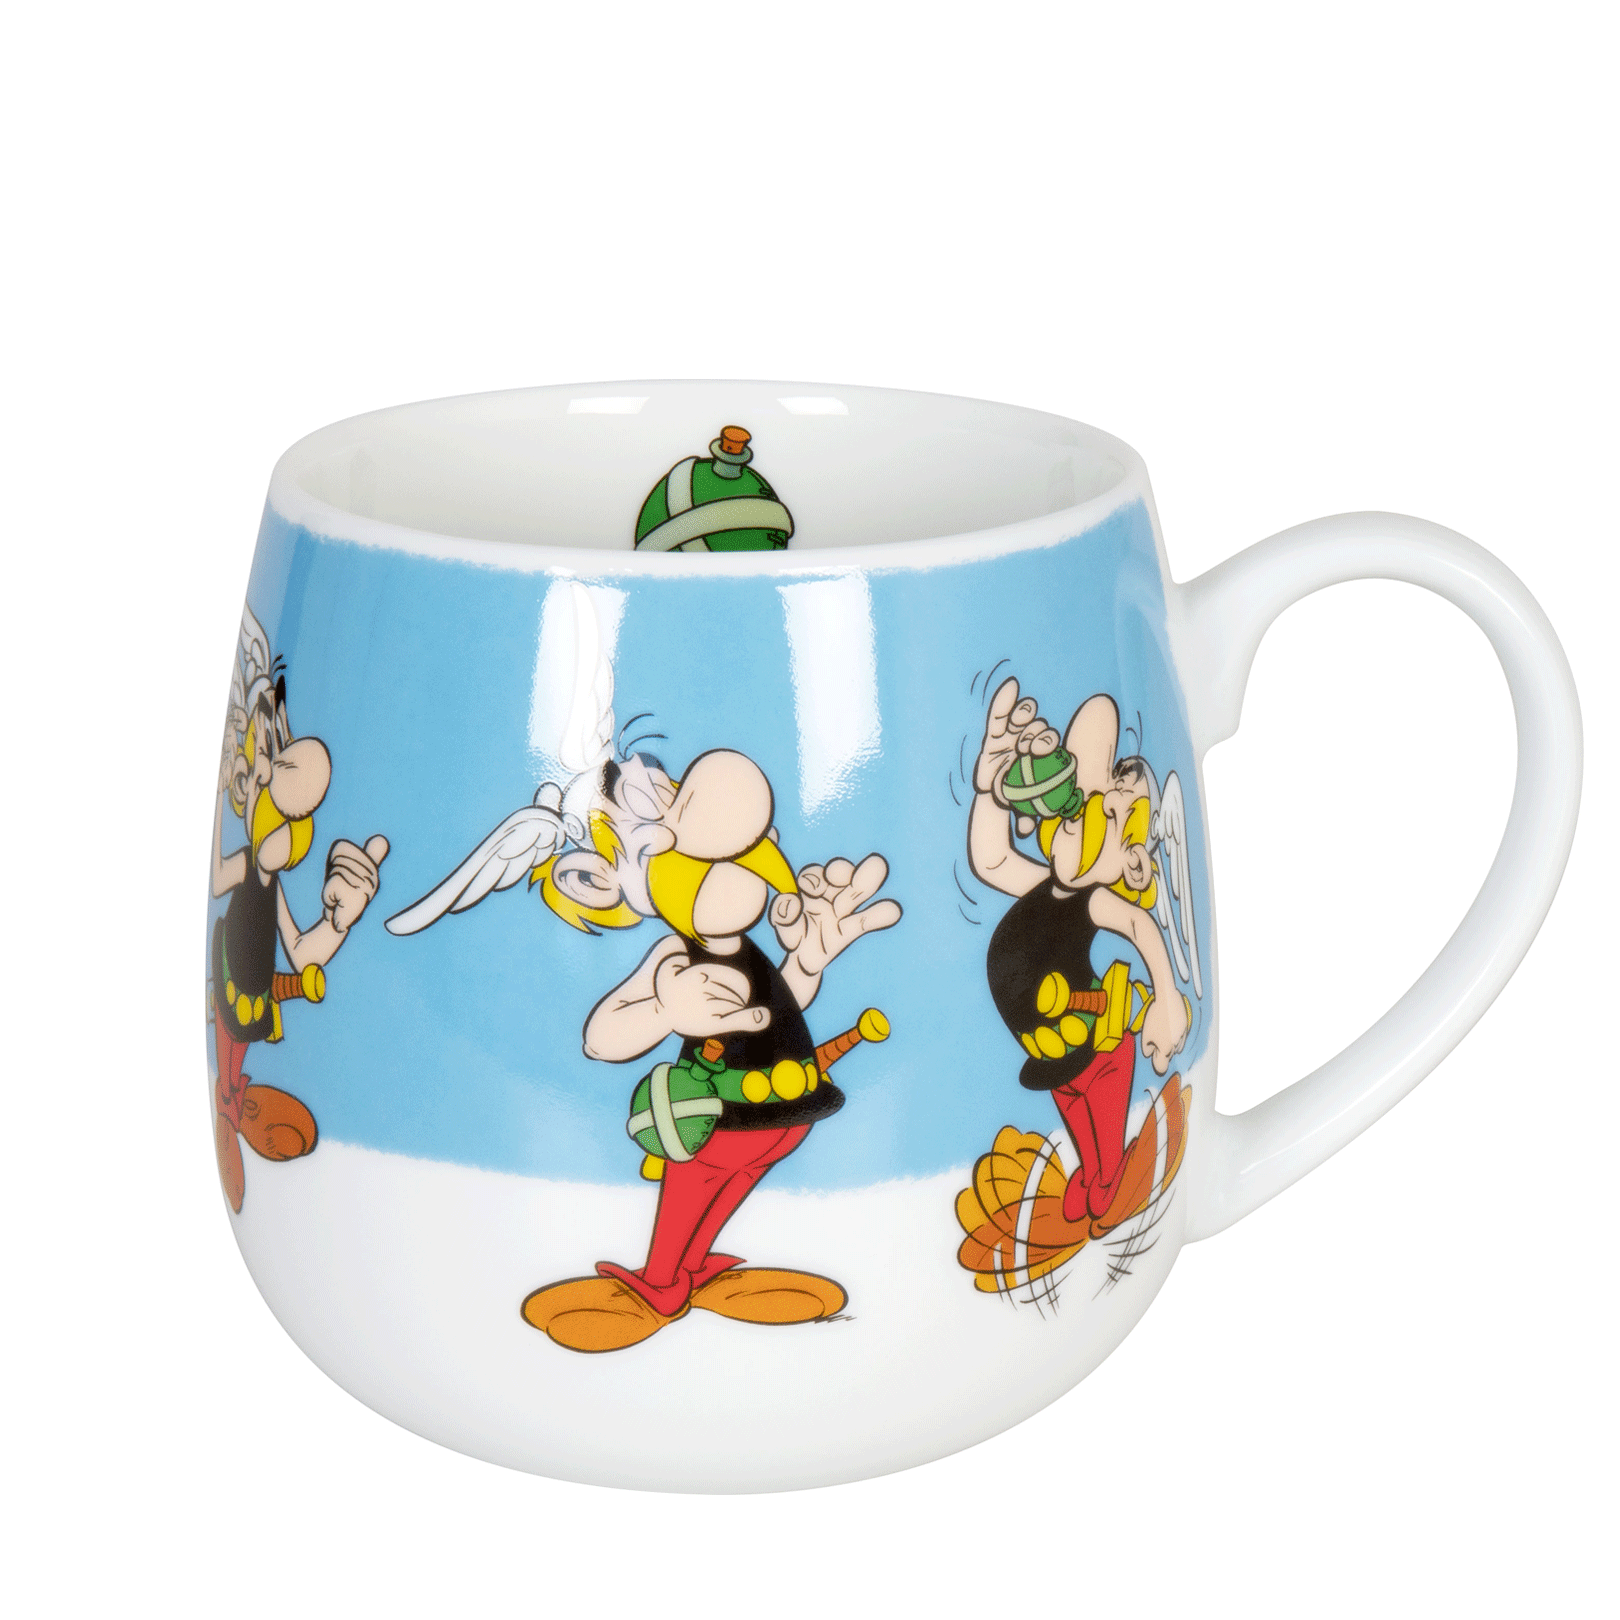 Kubek - Asterix - Magiczny napój - Könitz